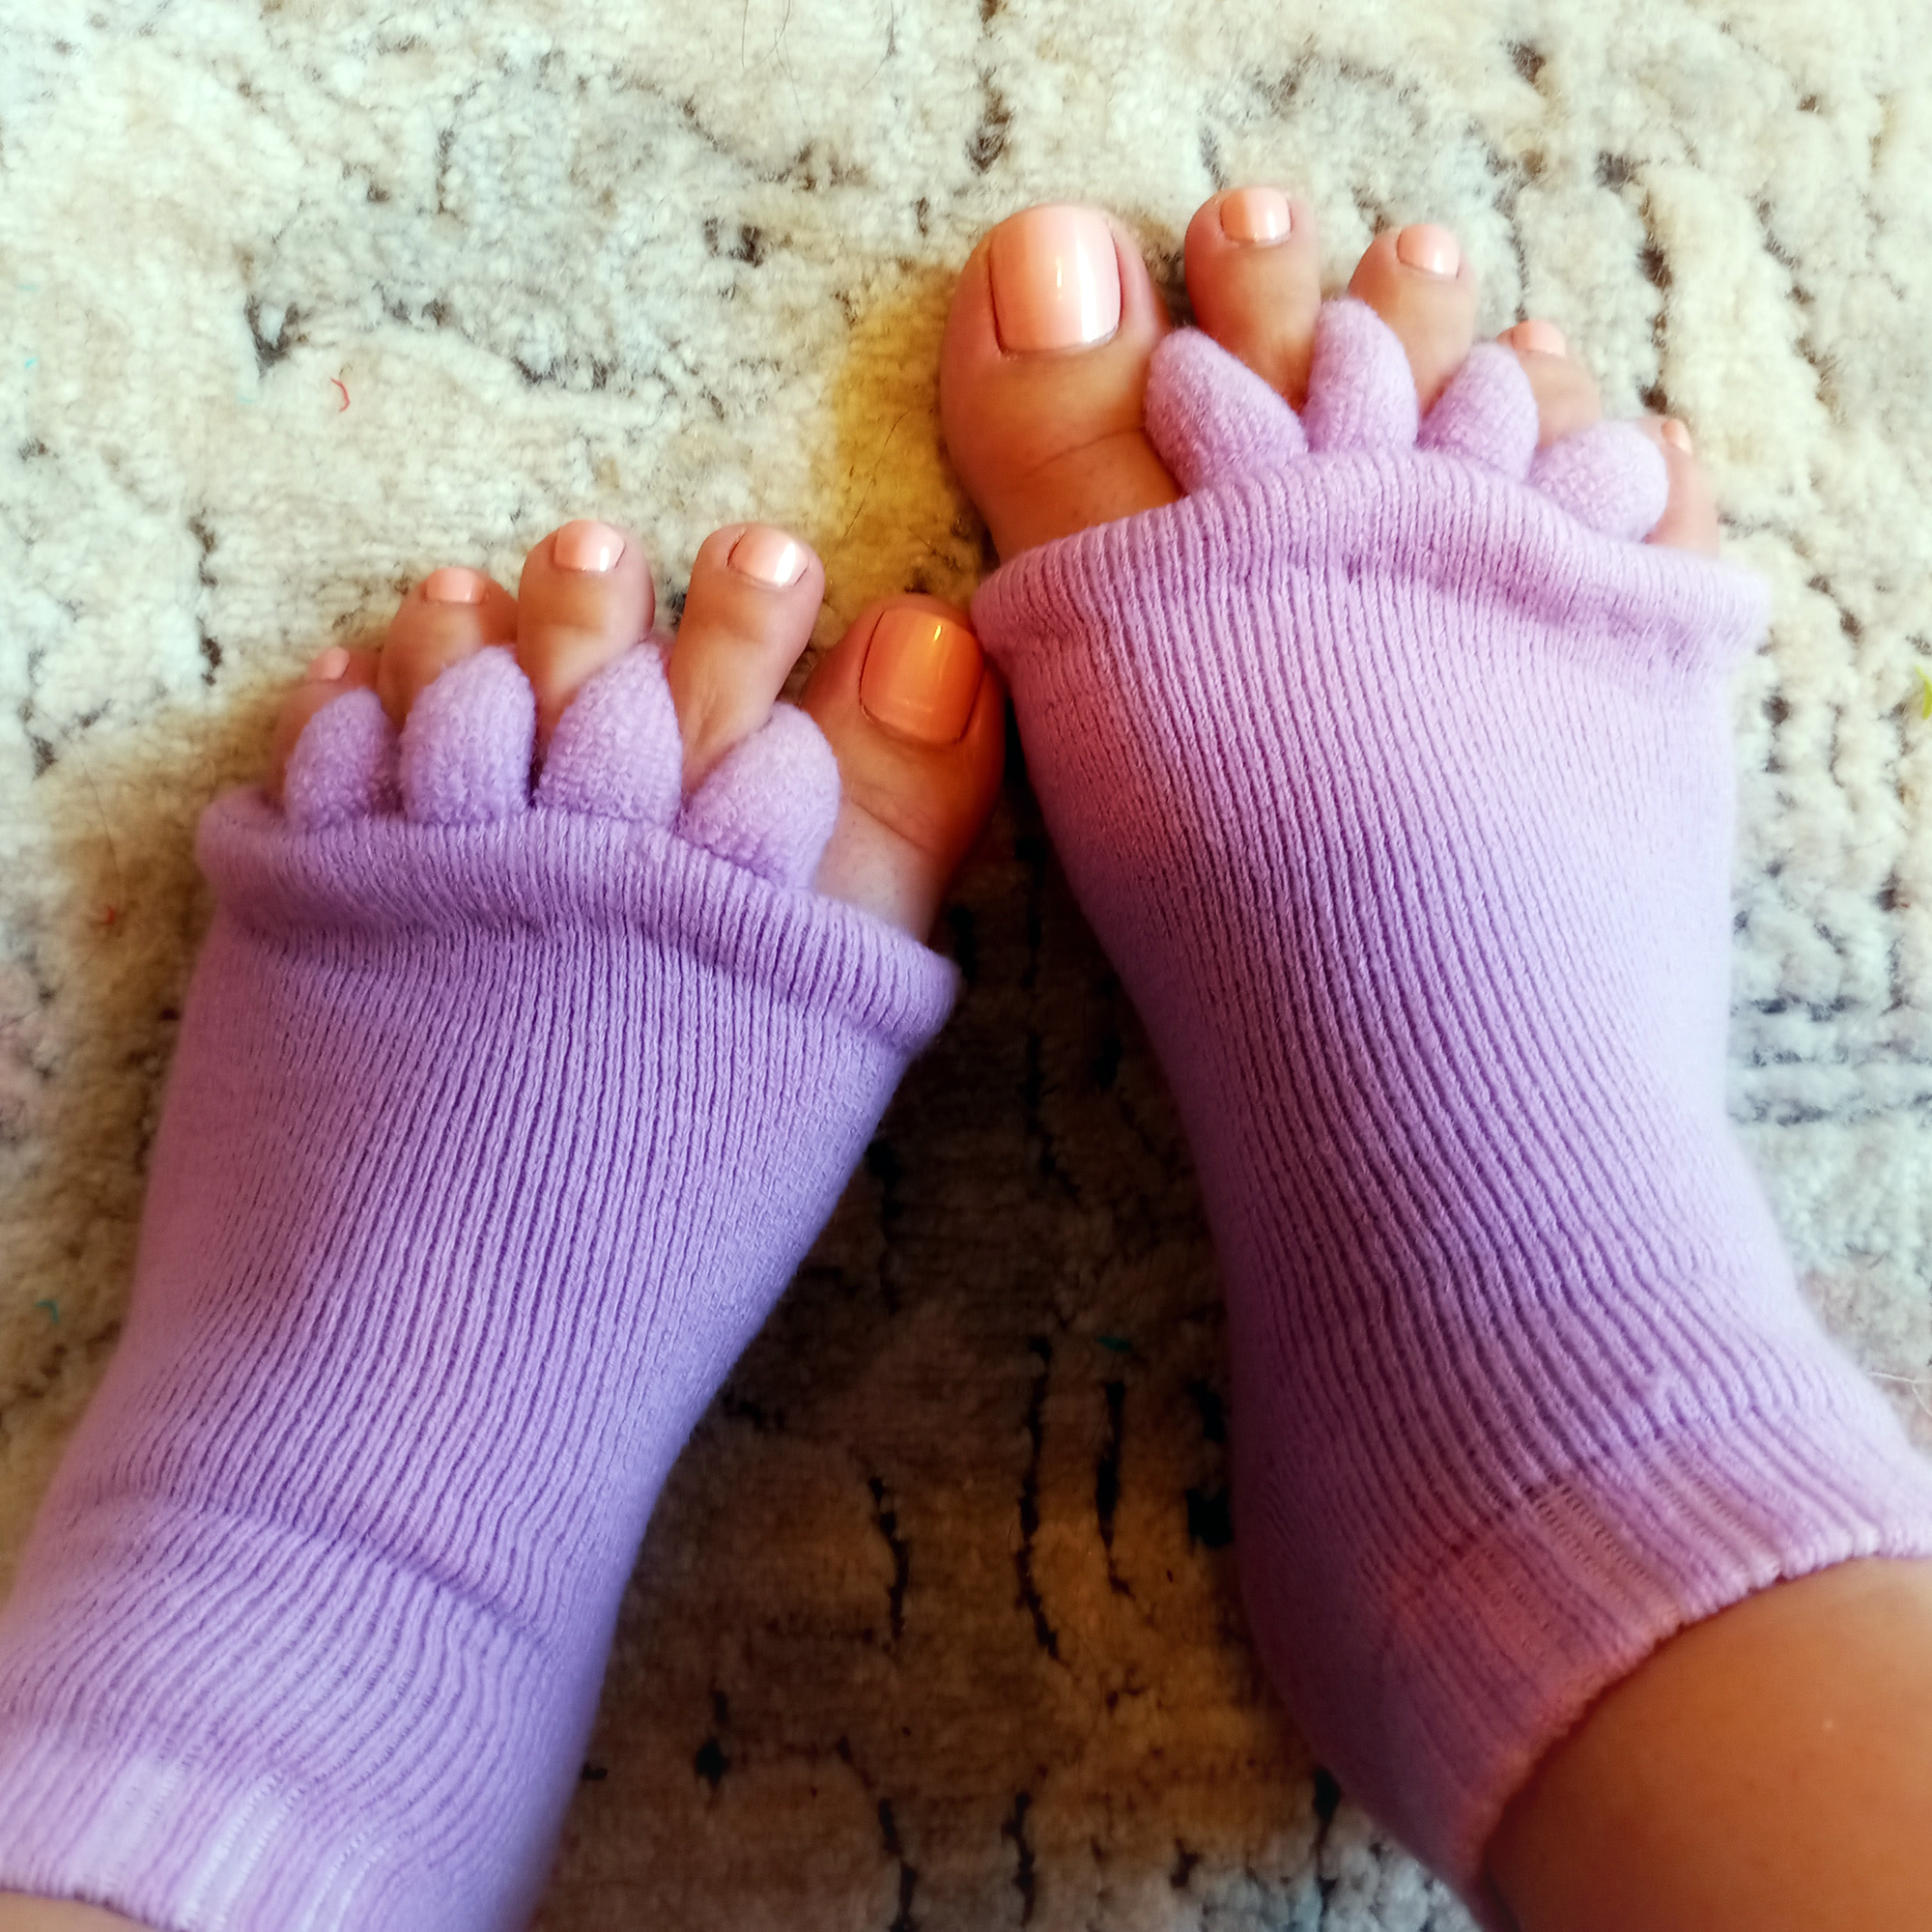 The Original Magic Sox™  Toe Separator Socks for Foot Alignment & Pain  Relief